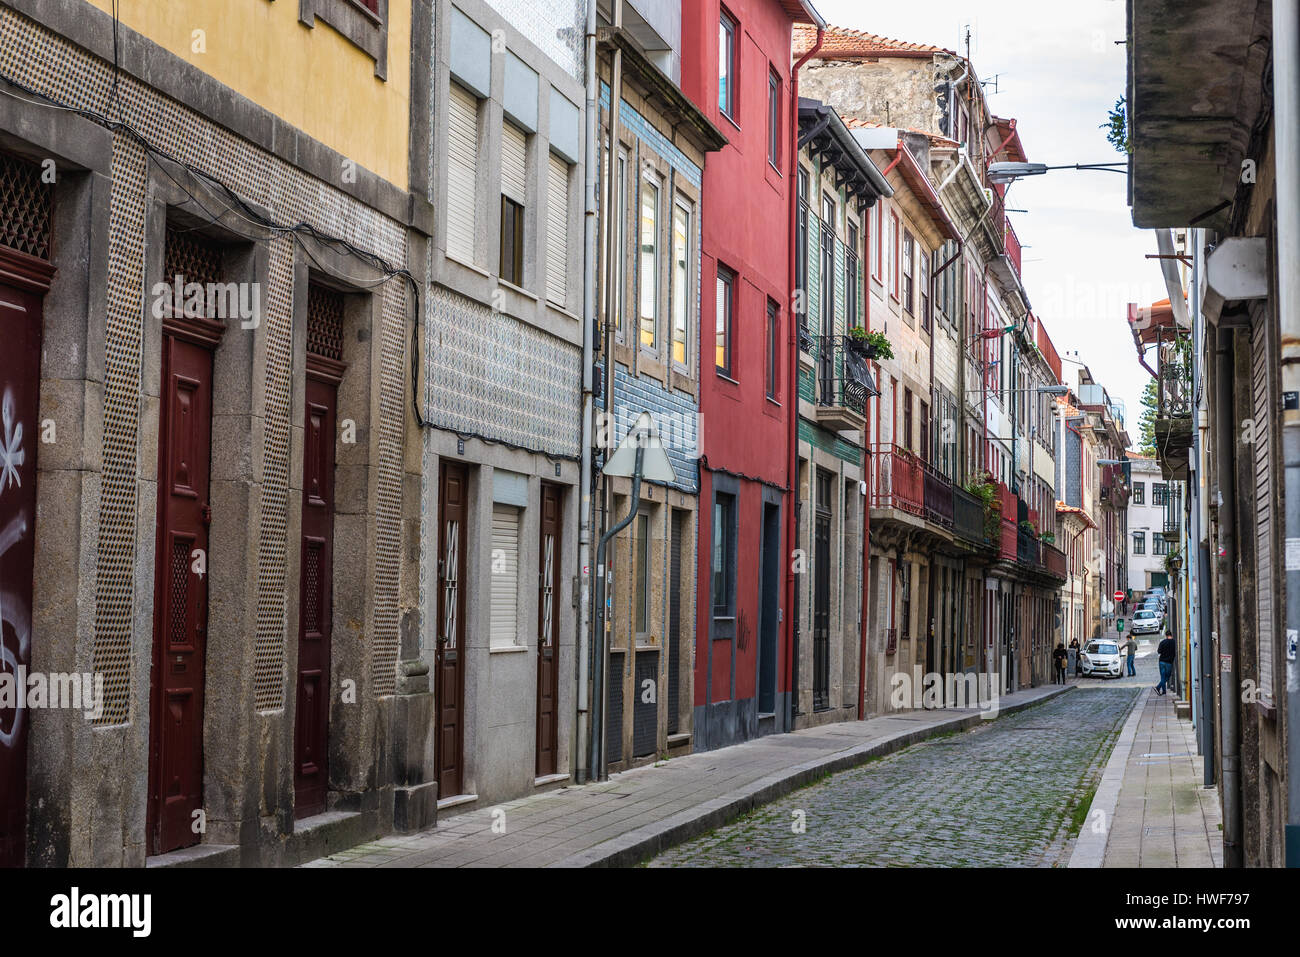 Maisons de ville avec façades en céramique ttiles sur une rue étroite Rua do Pinheiro (Pine Tree Street) dans la ville de Porto sur la péninsule ibérique, le Portugal Banque D'Images